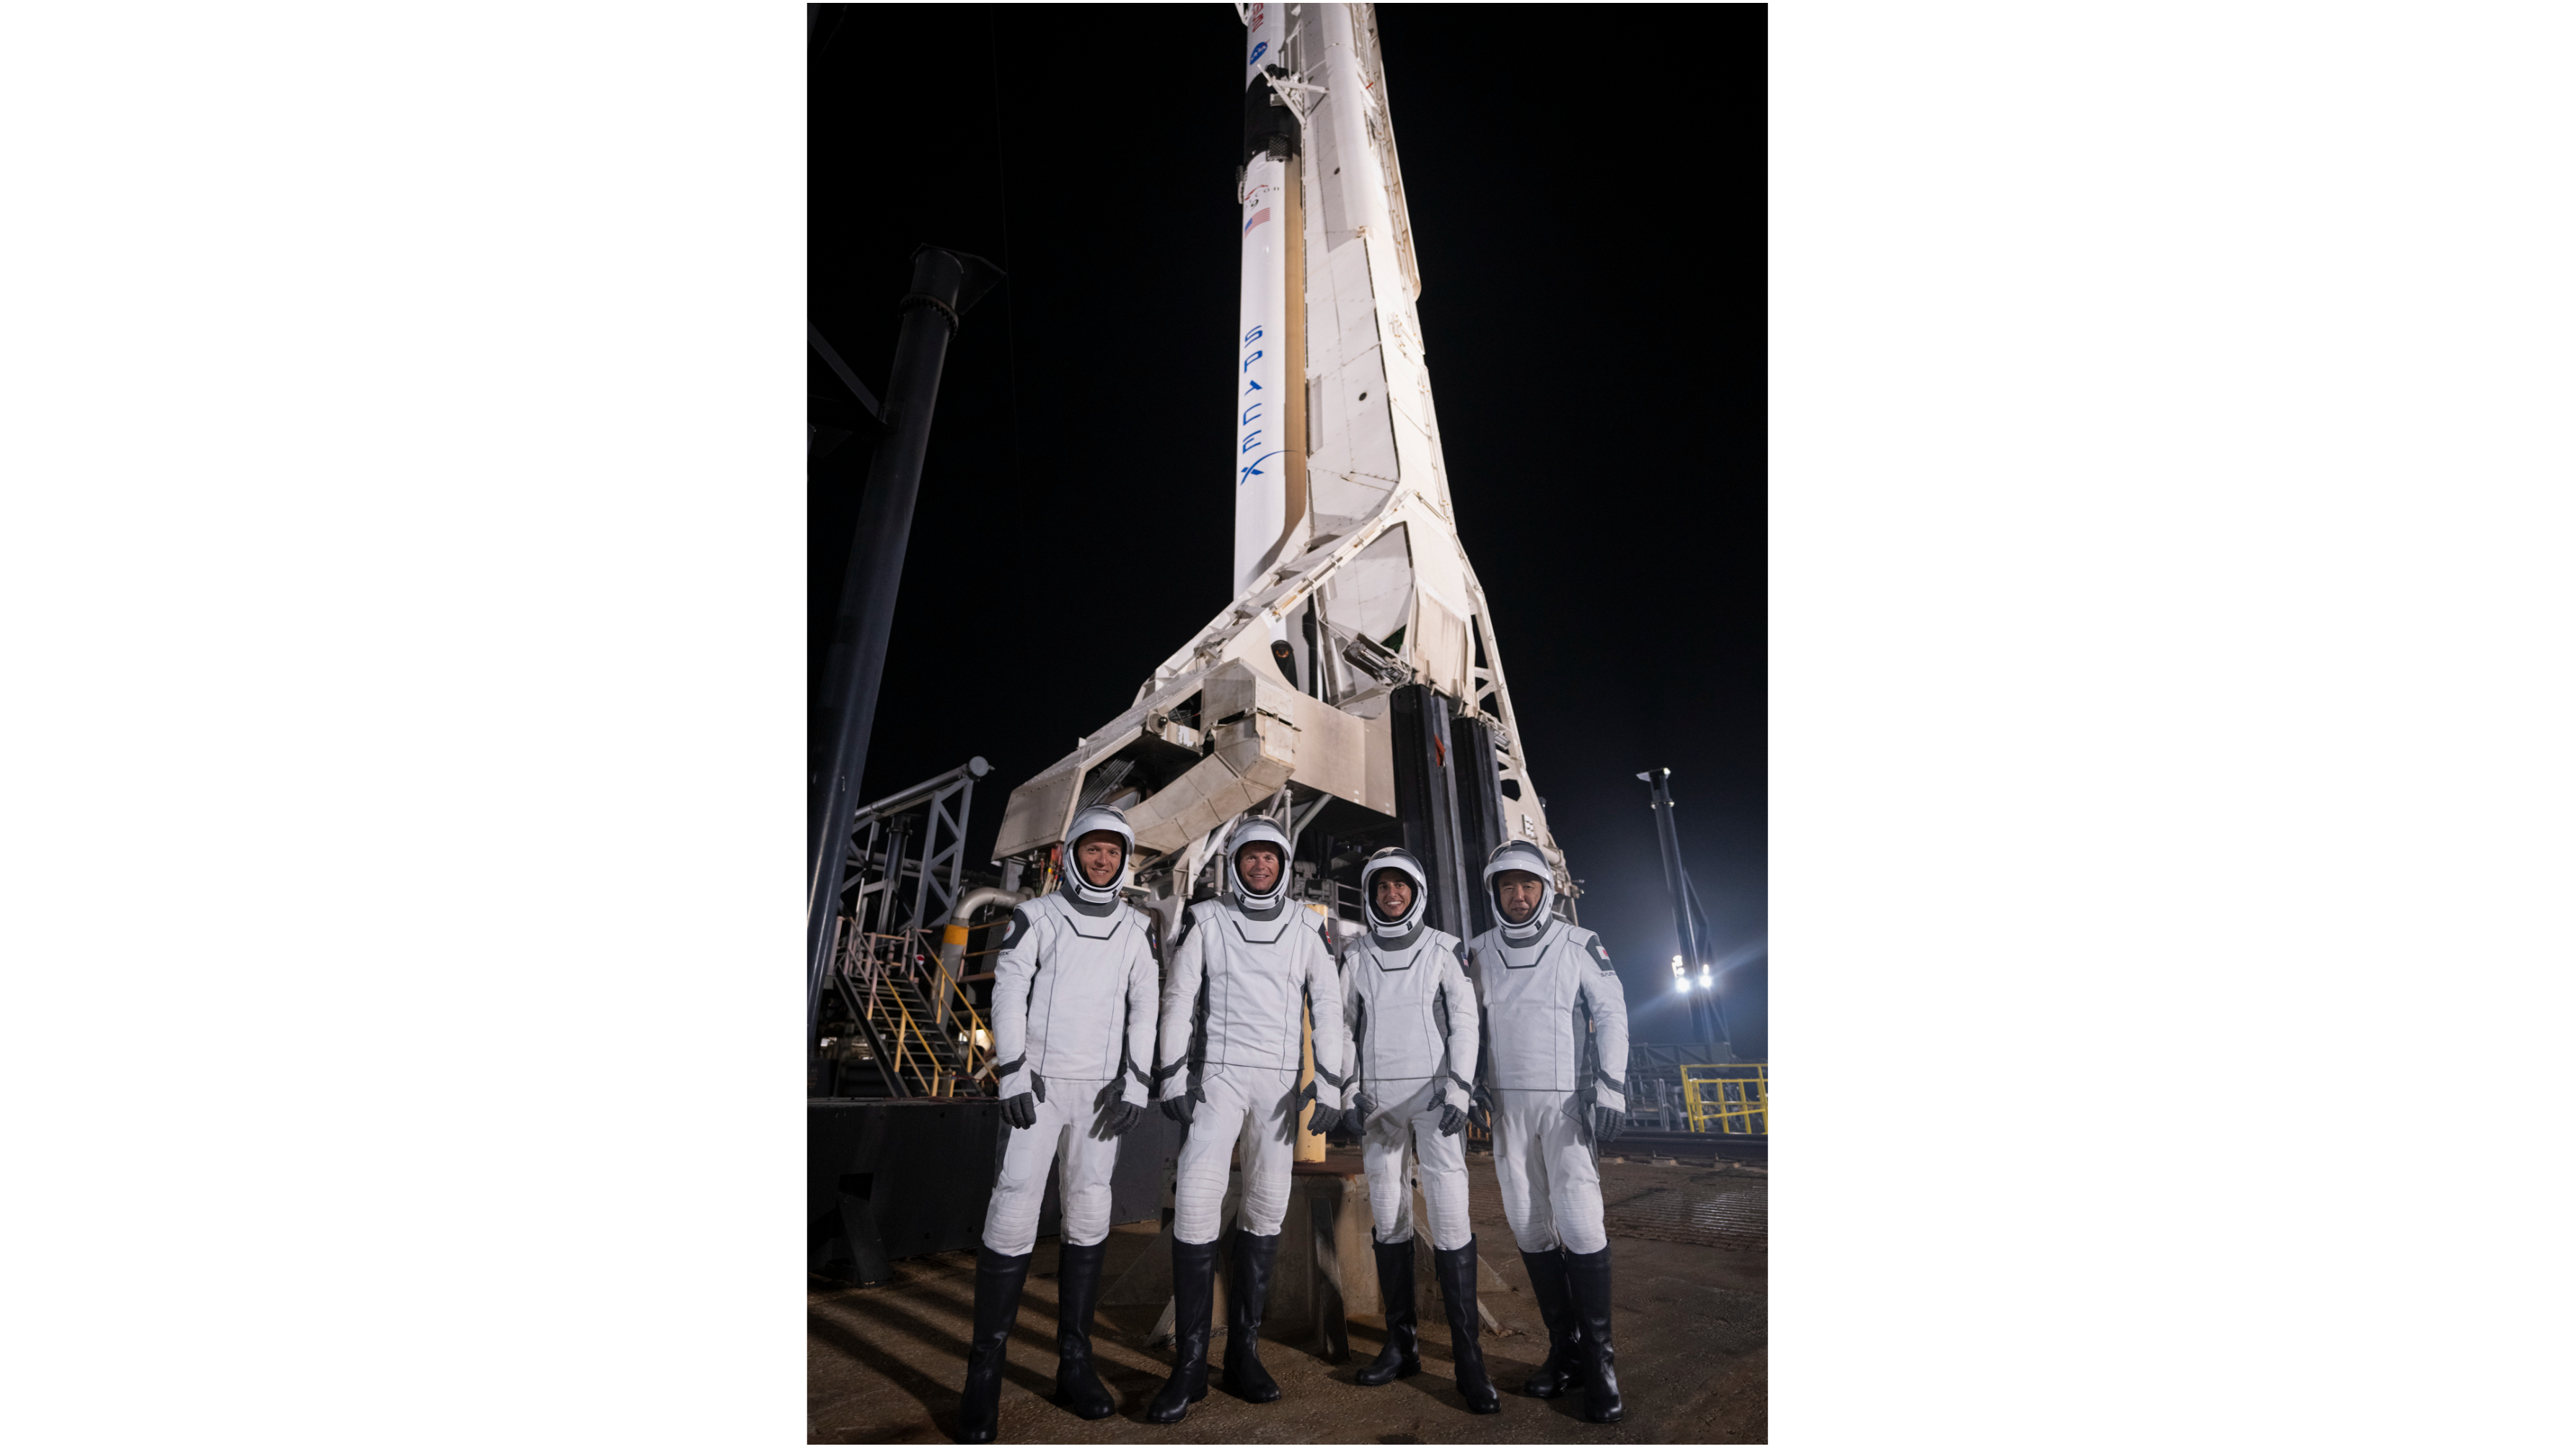 Cuatro astronautas y trajes espaciales blancos y negros se encuentran por la noche frente a un cohete en la plataforma de lanzamiento.